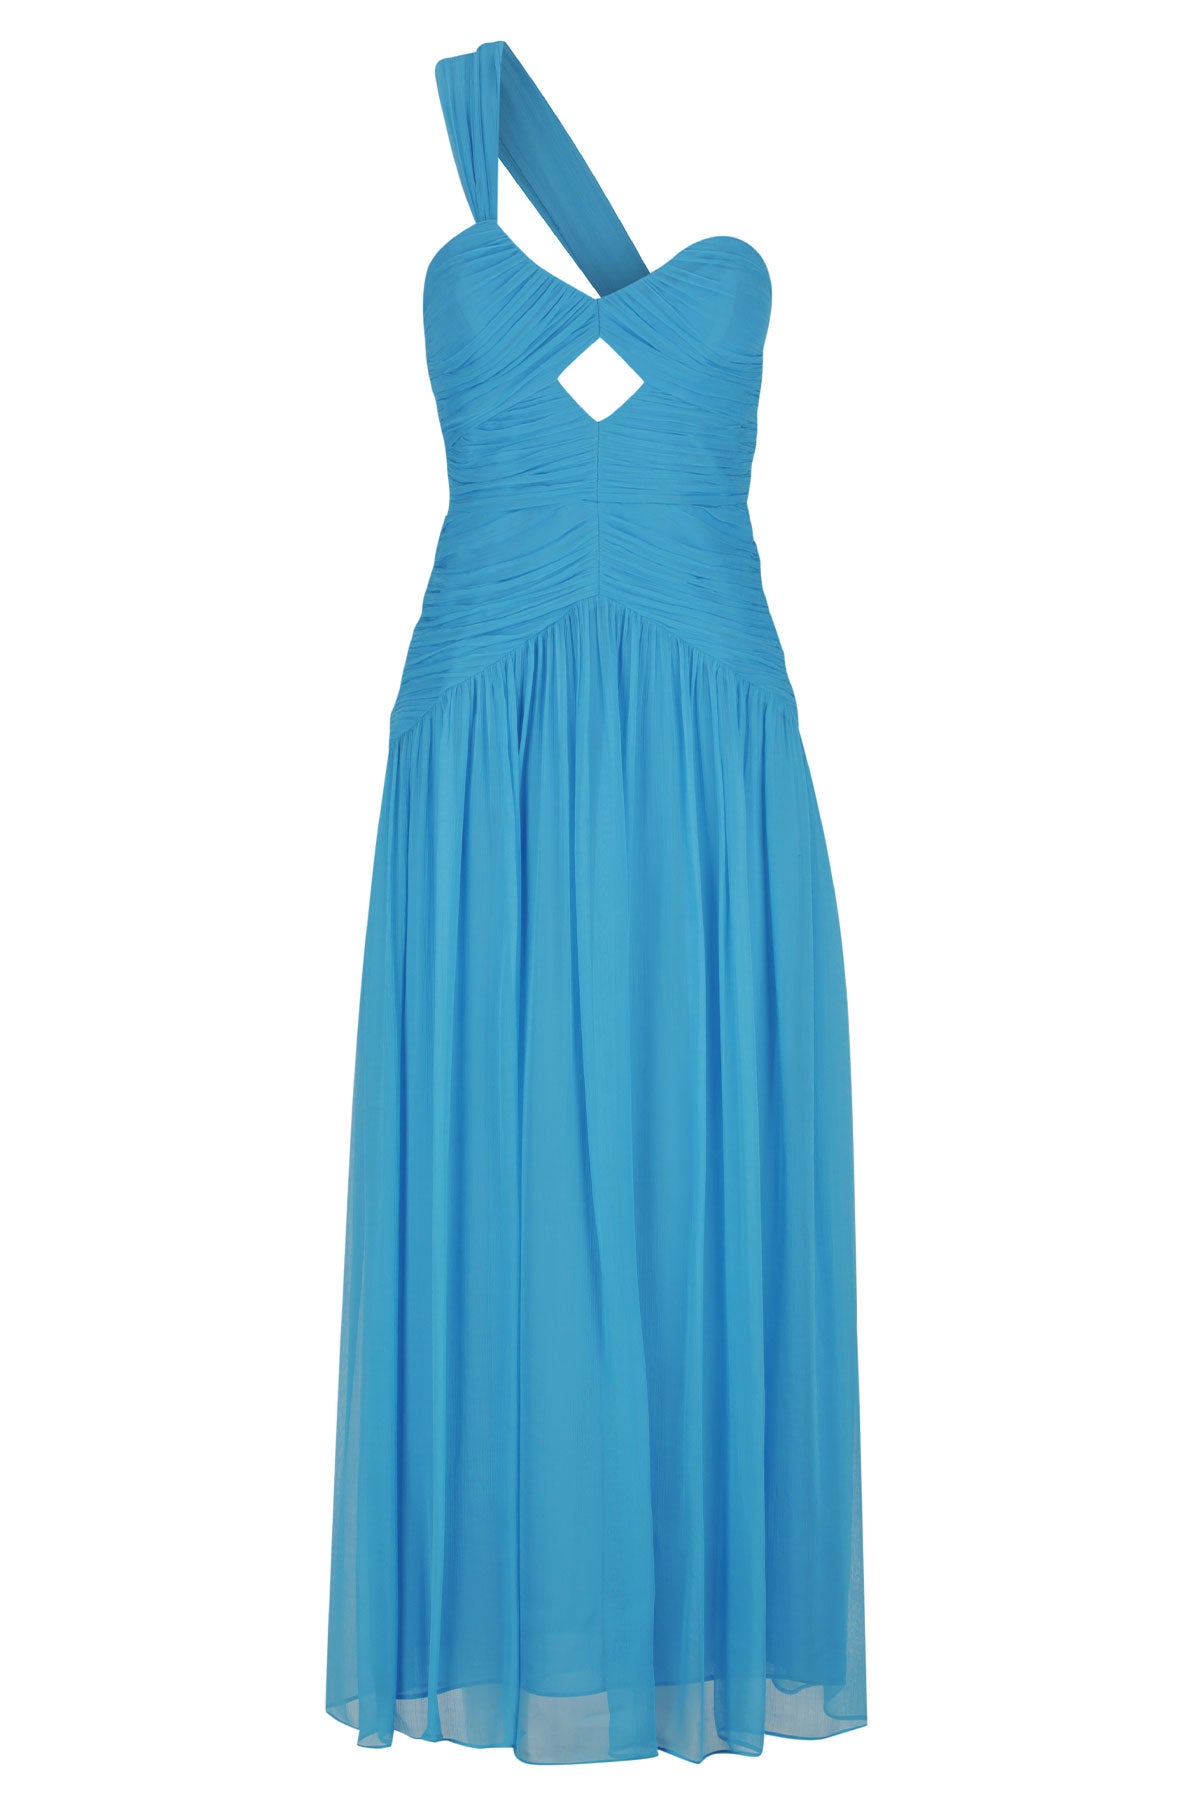 Shona Joy | Margot One Shoulder Midi Dress